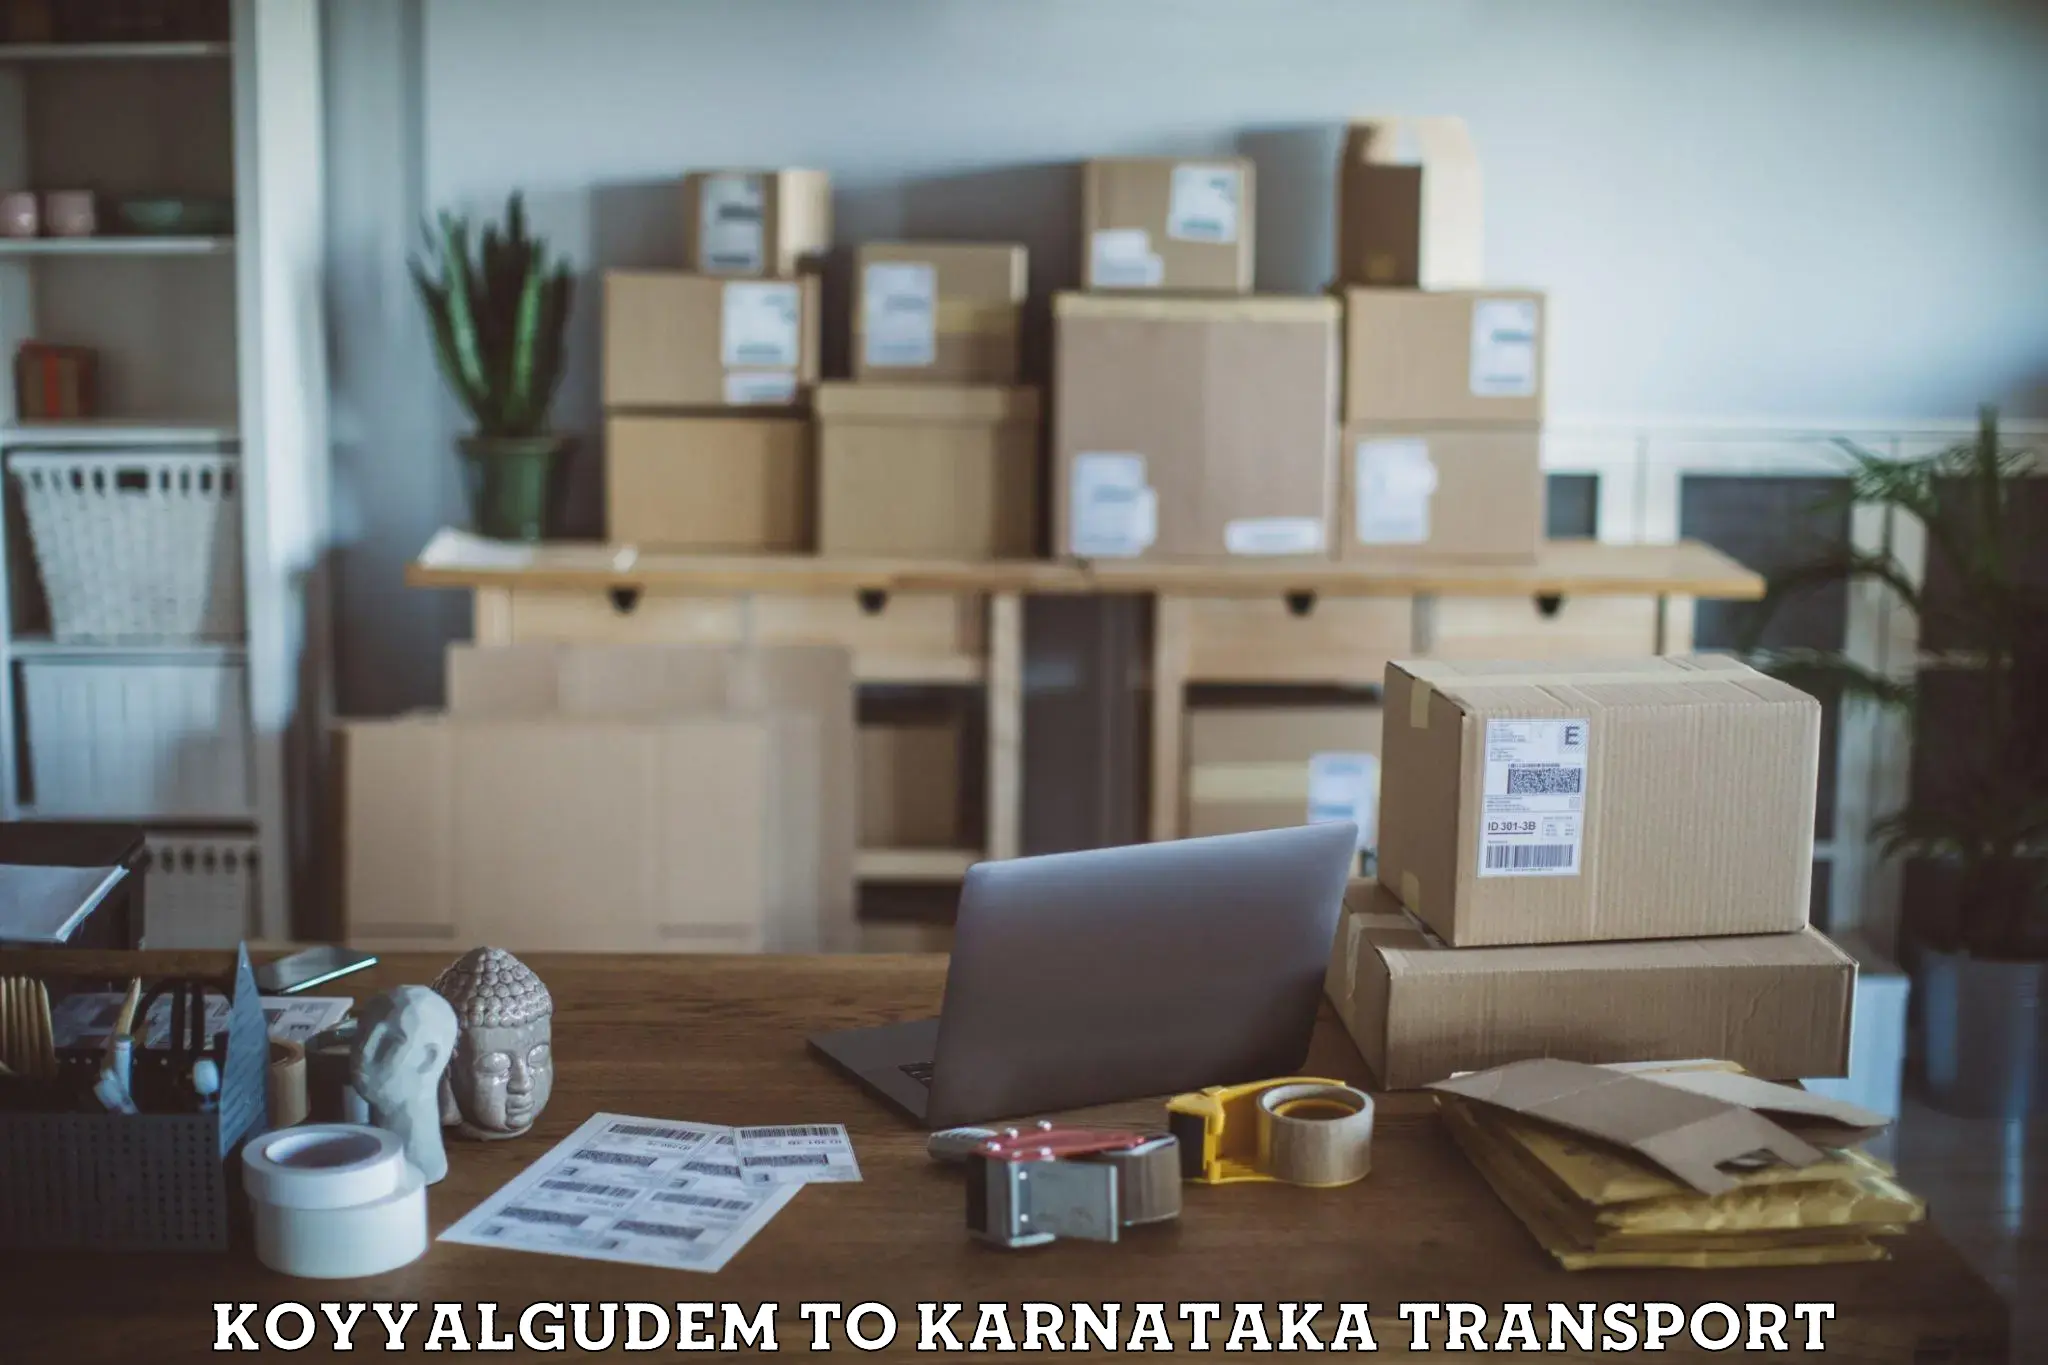 Container transport service Koyyalgudem to Davangere